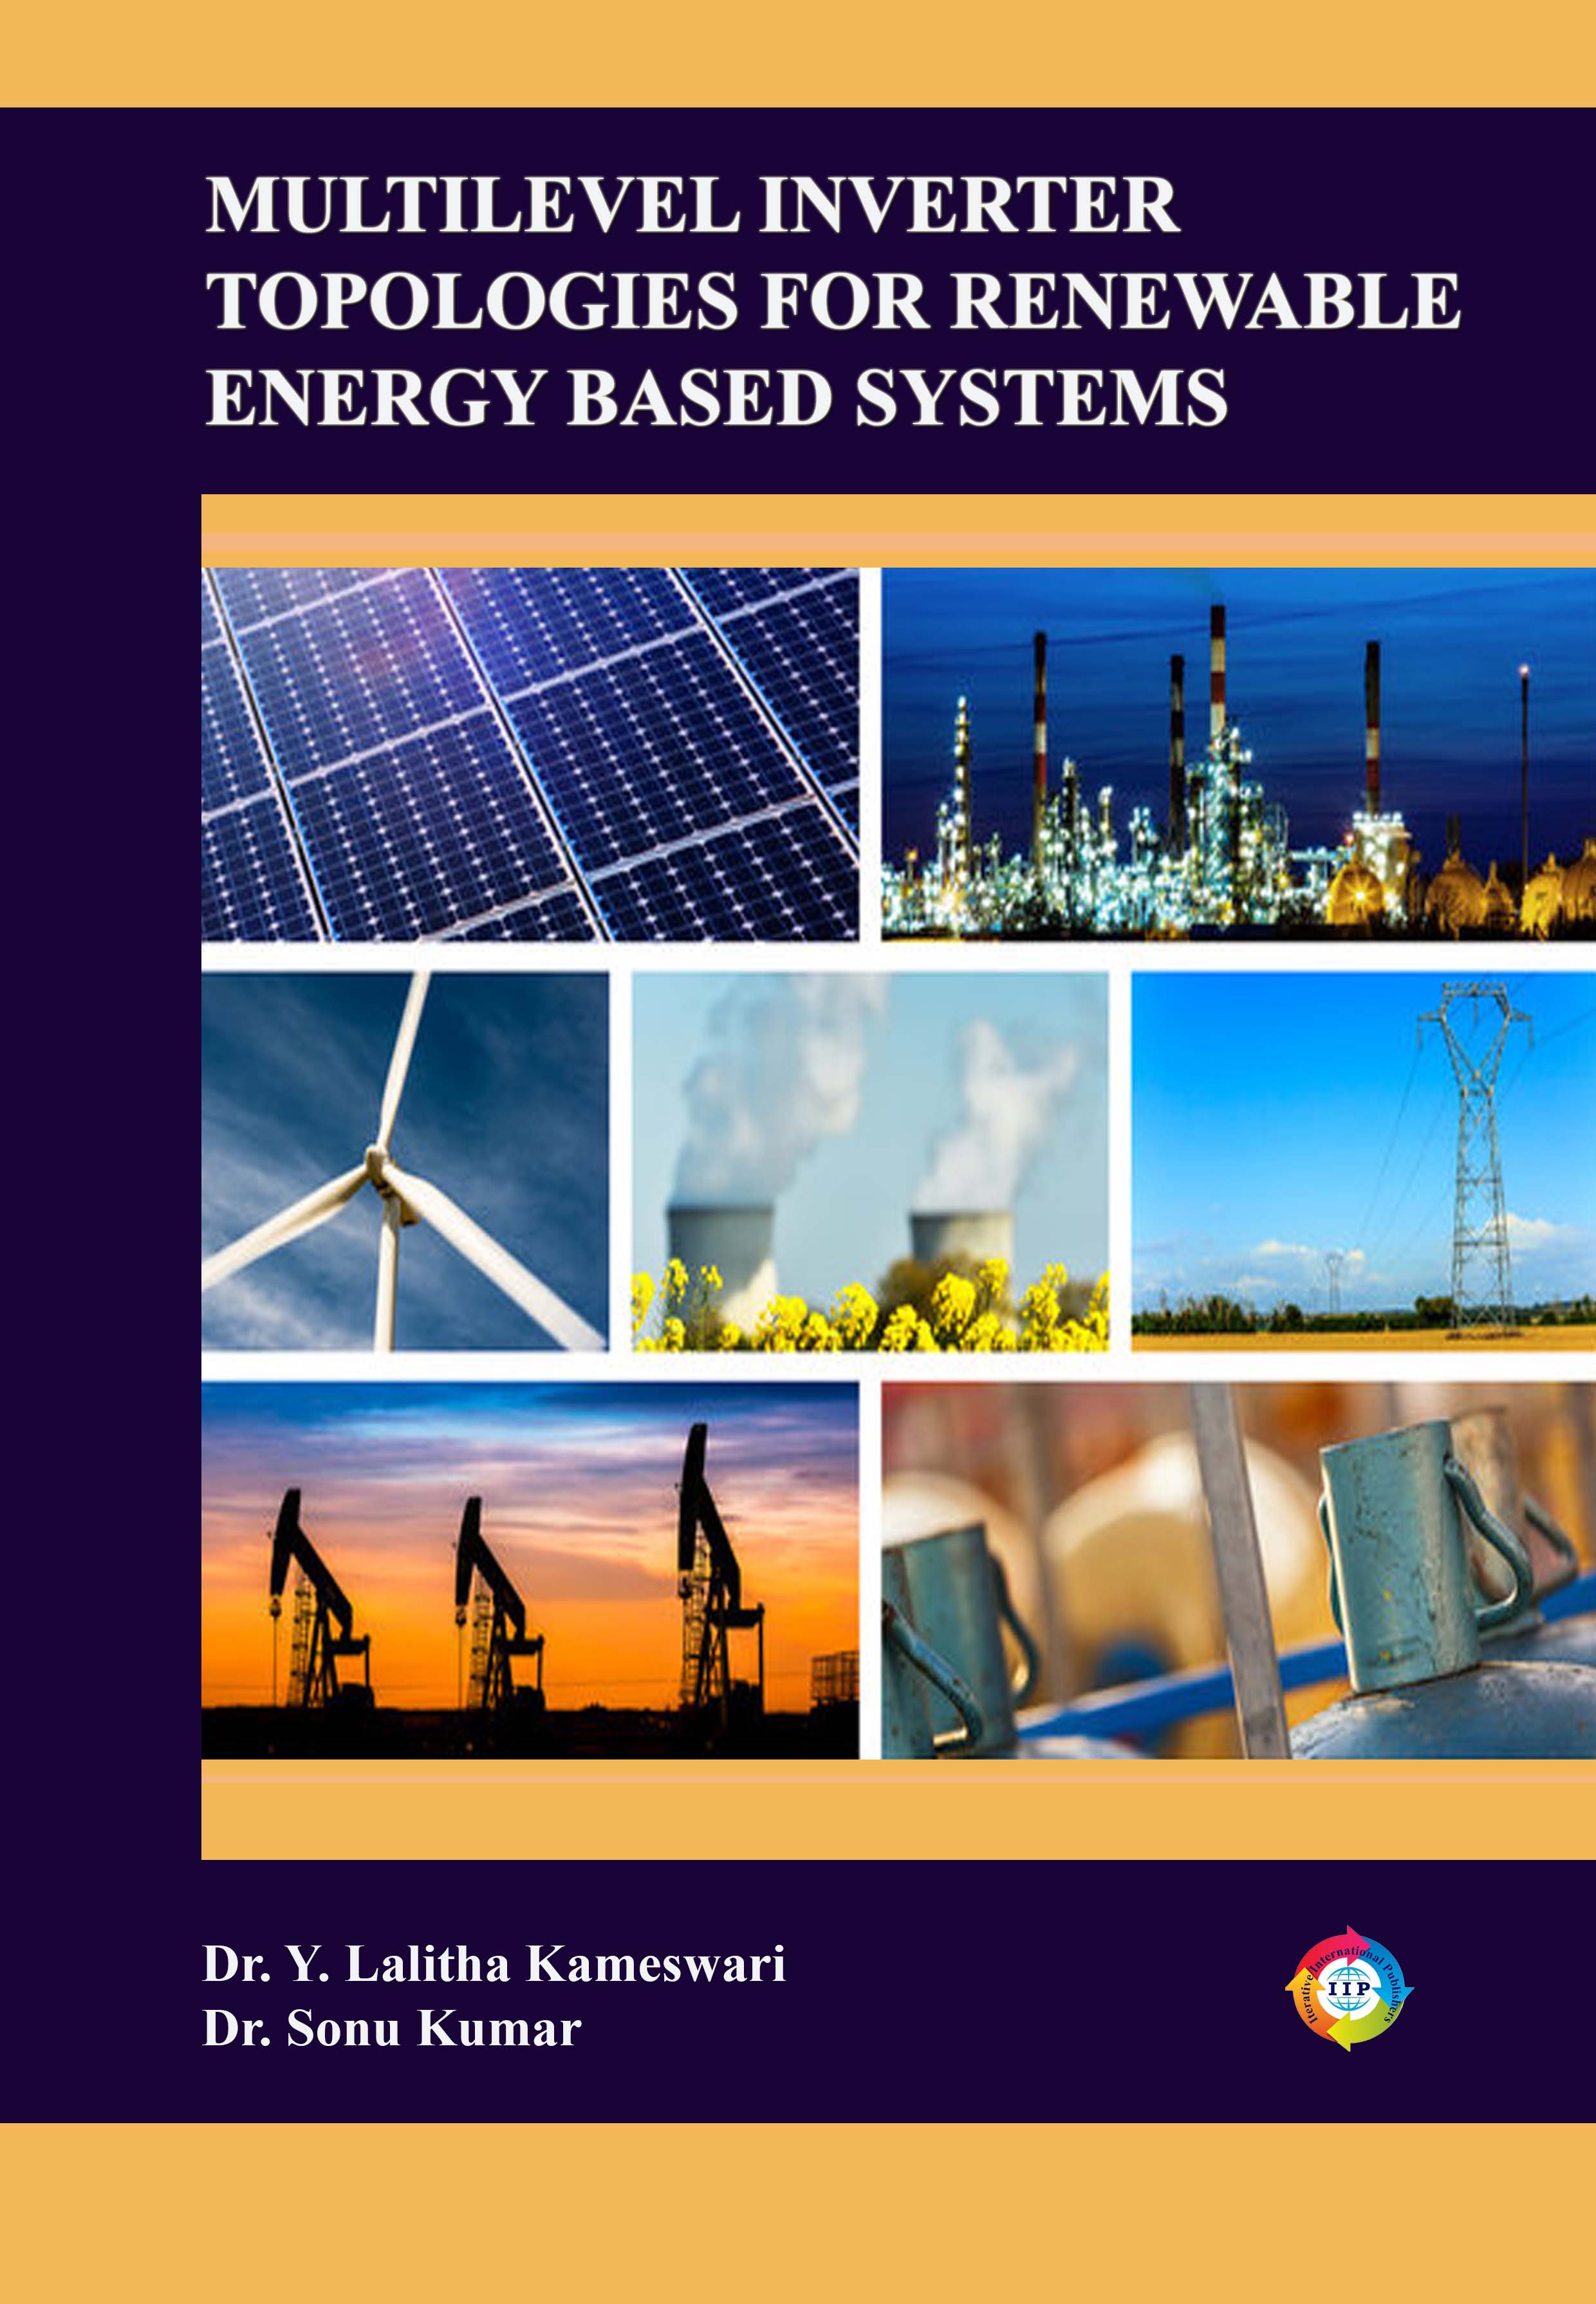 MULTILEVEL INVERTER TOPOLOGIES FOR RENEWABLE ENERGY BASED SYSTEMS